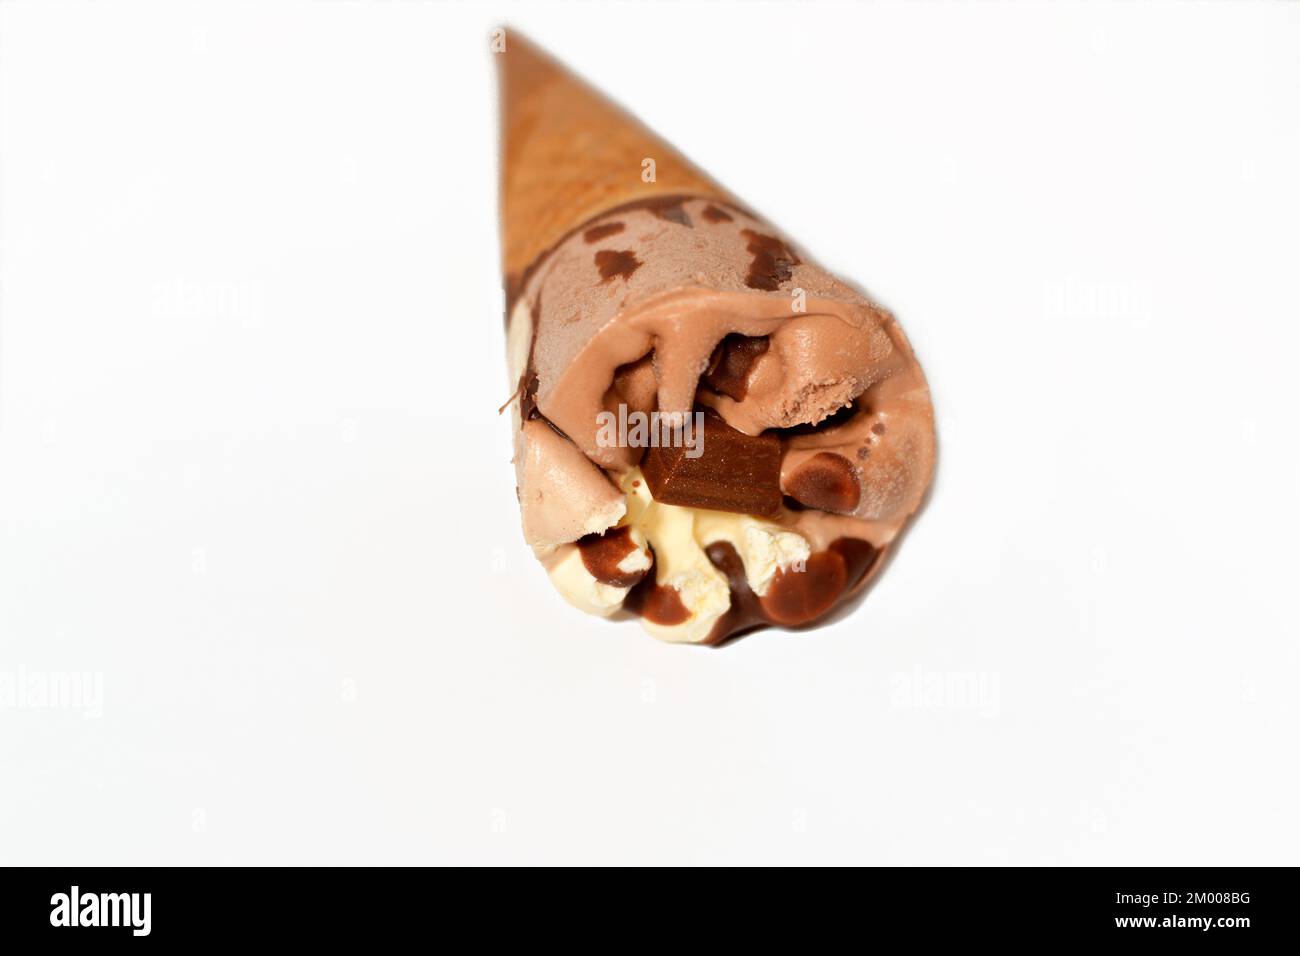 Eiscreme aus Kakao, Schokolade und Vanille mit einem Schokoriegel in knusprigen Waffeln, selektiver Fokus des Schmelzens von kaltem Eis in einem w Stockfoto